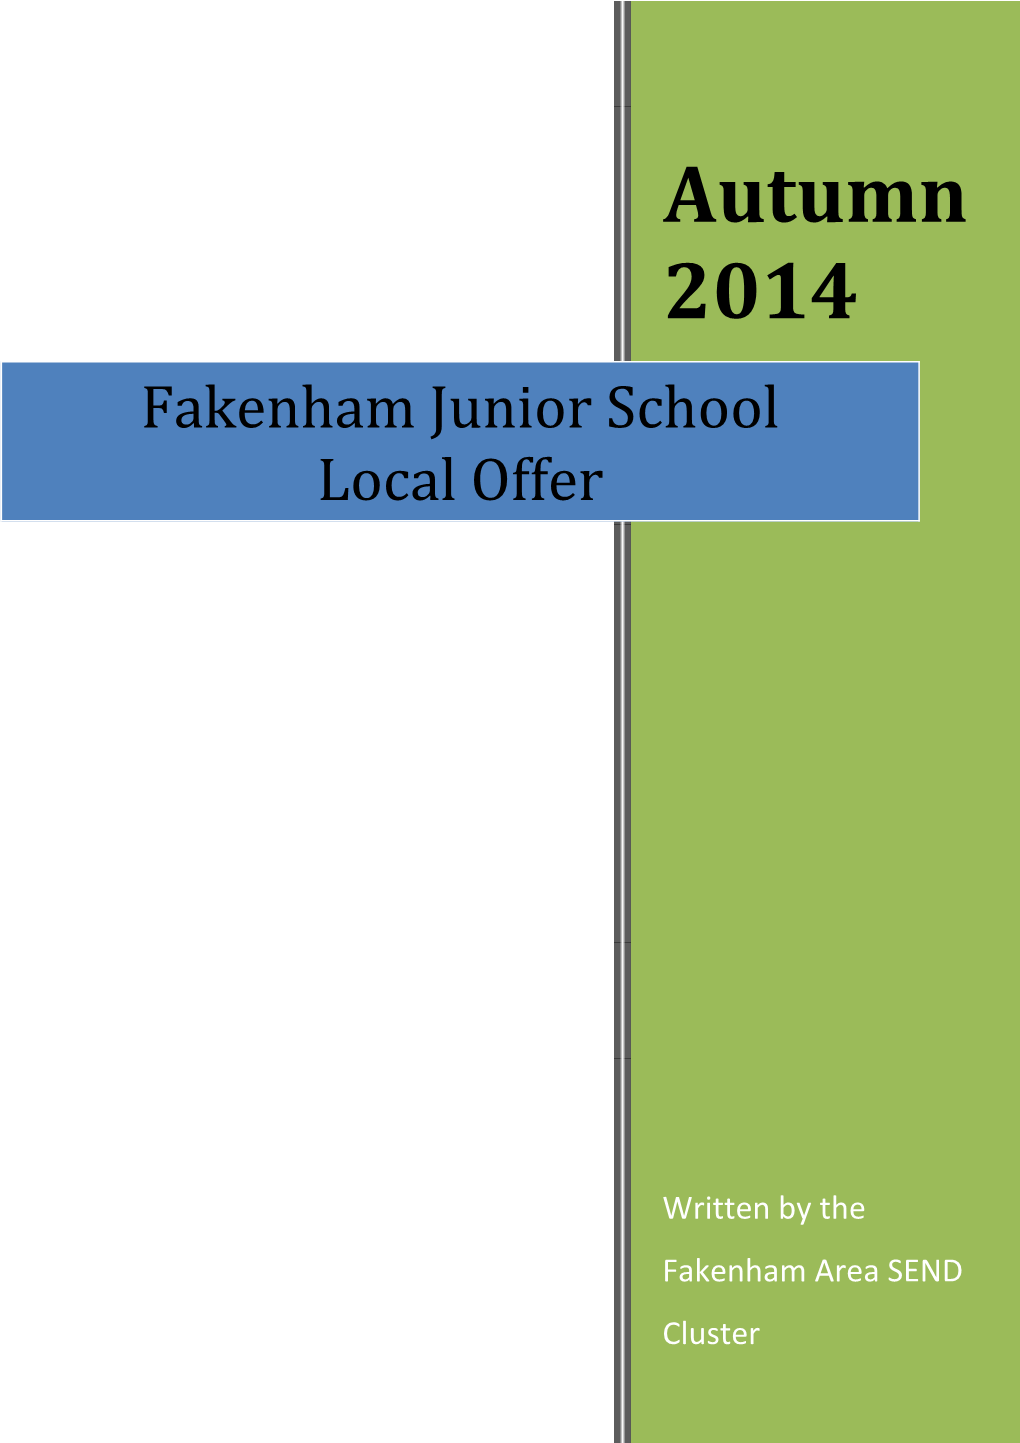 Fakenham Junior School Local Offer